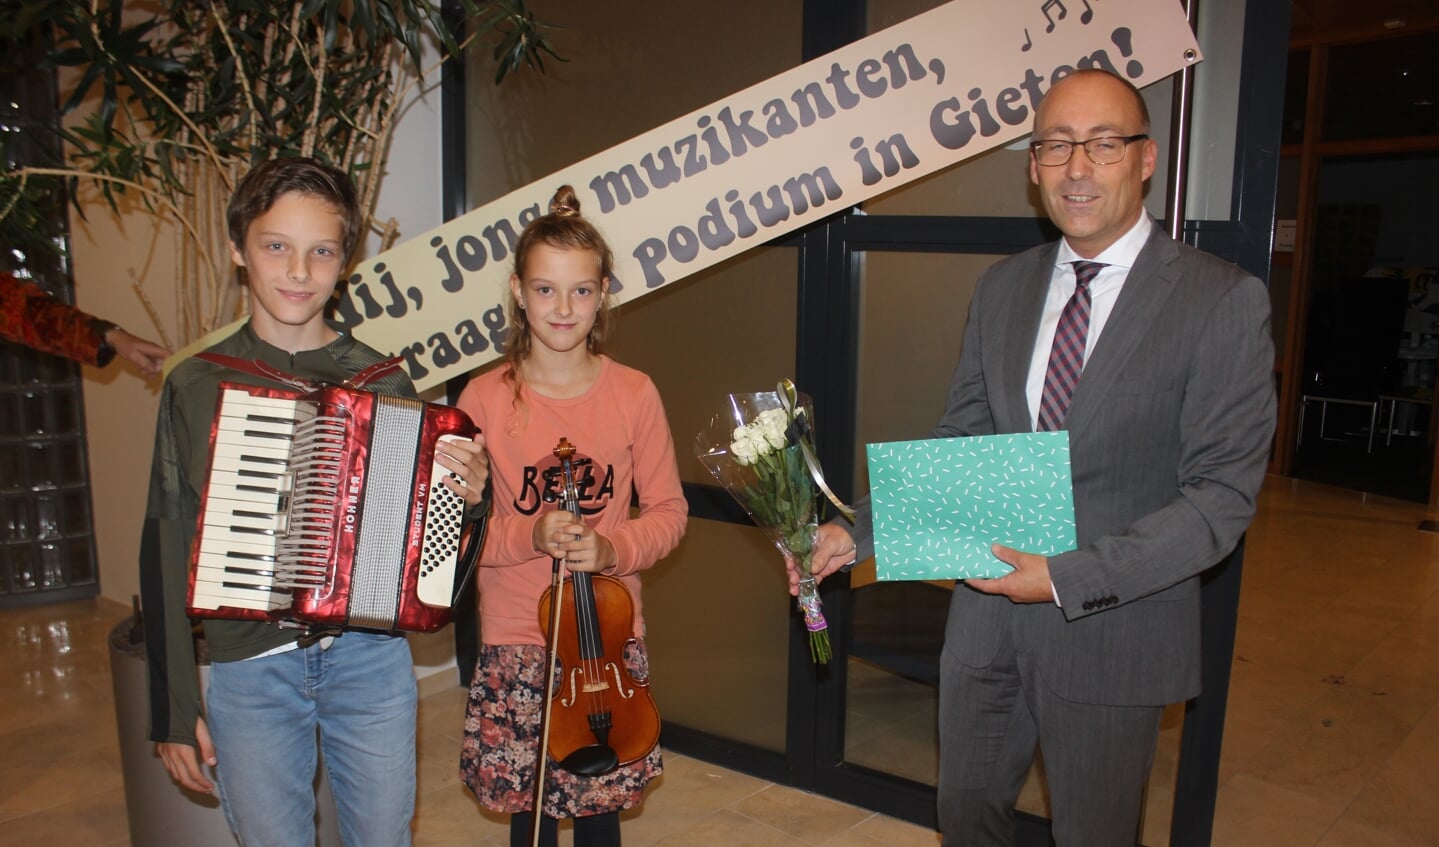 De jonge muzikanten werden hartelijk ontvangen door burgemeester Anno Wietze Hiemstra.